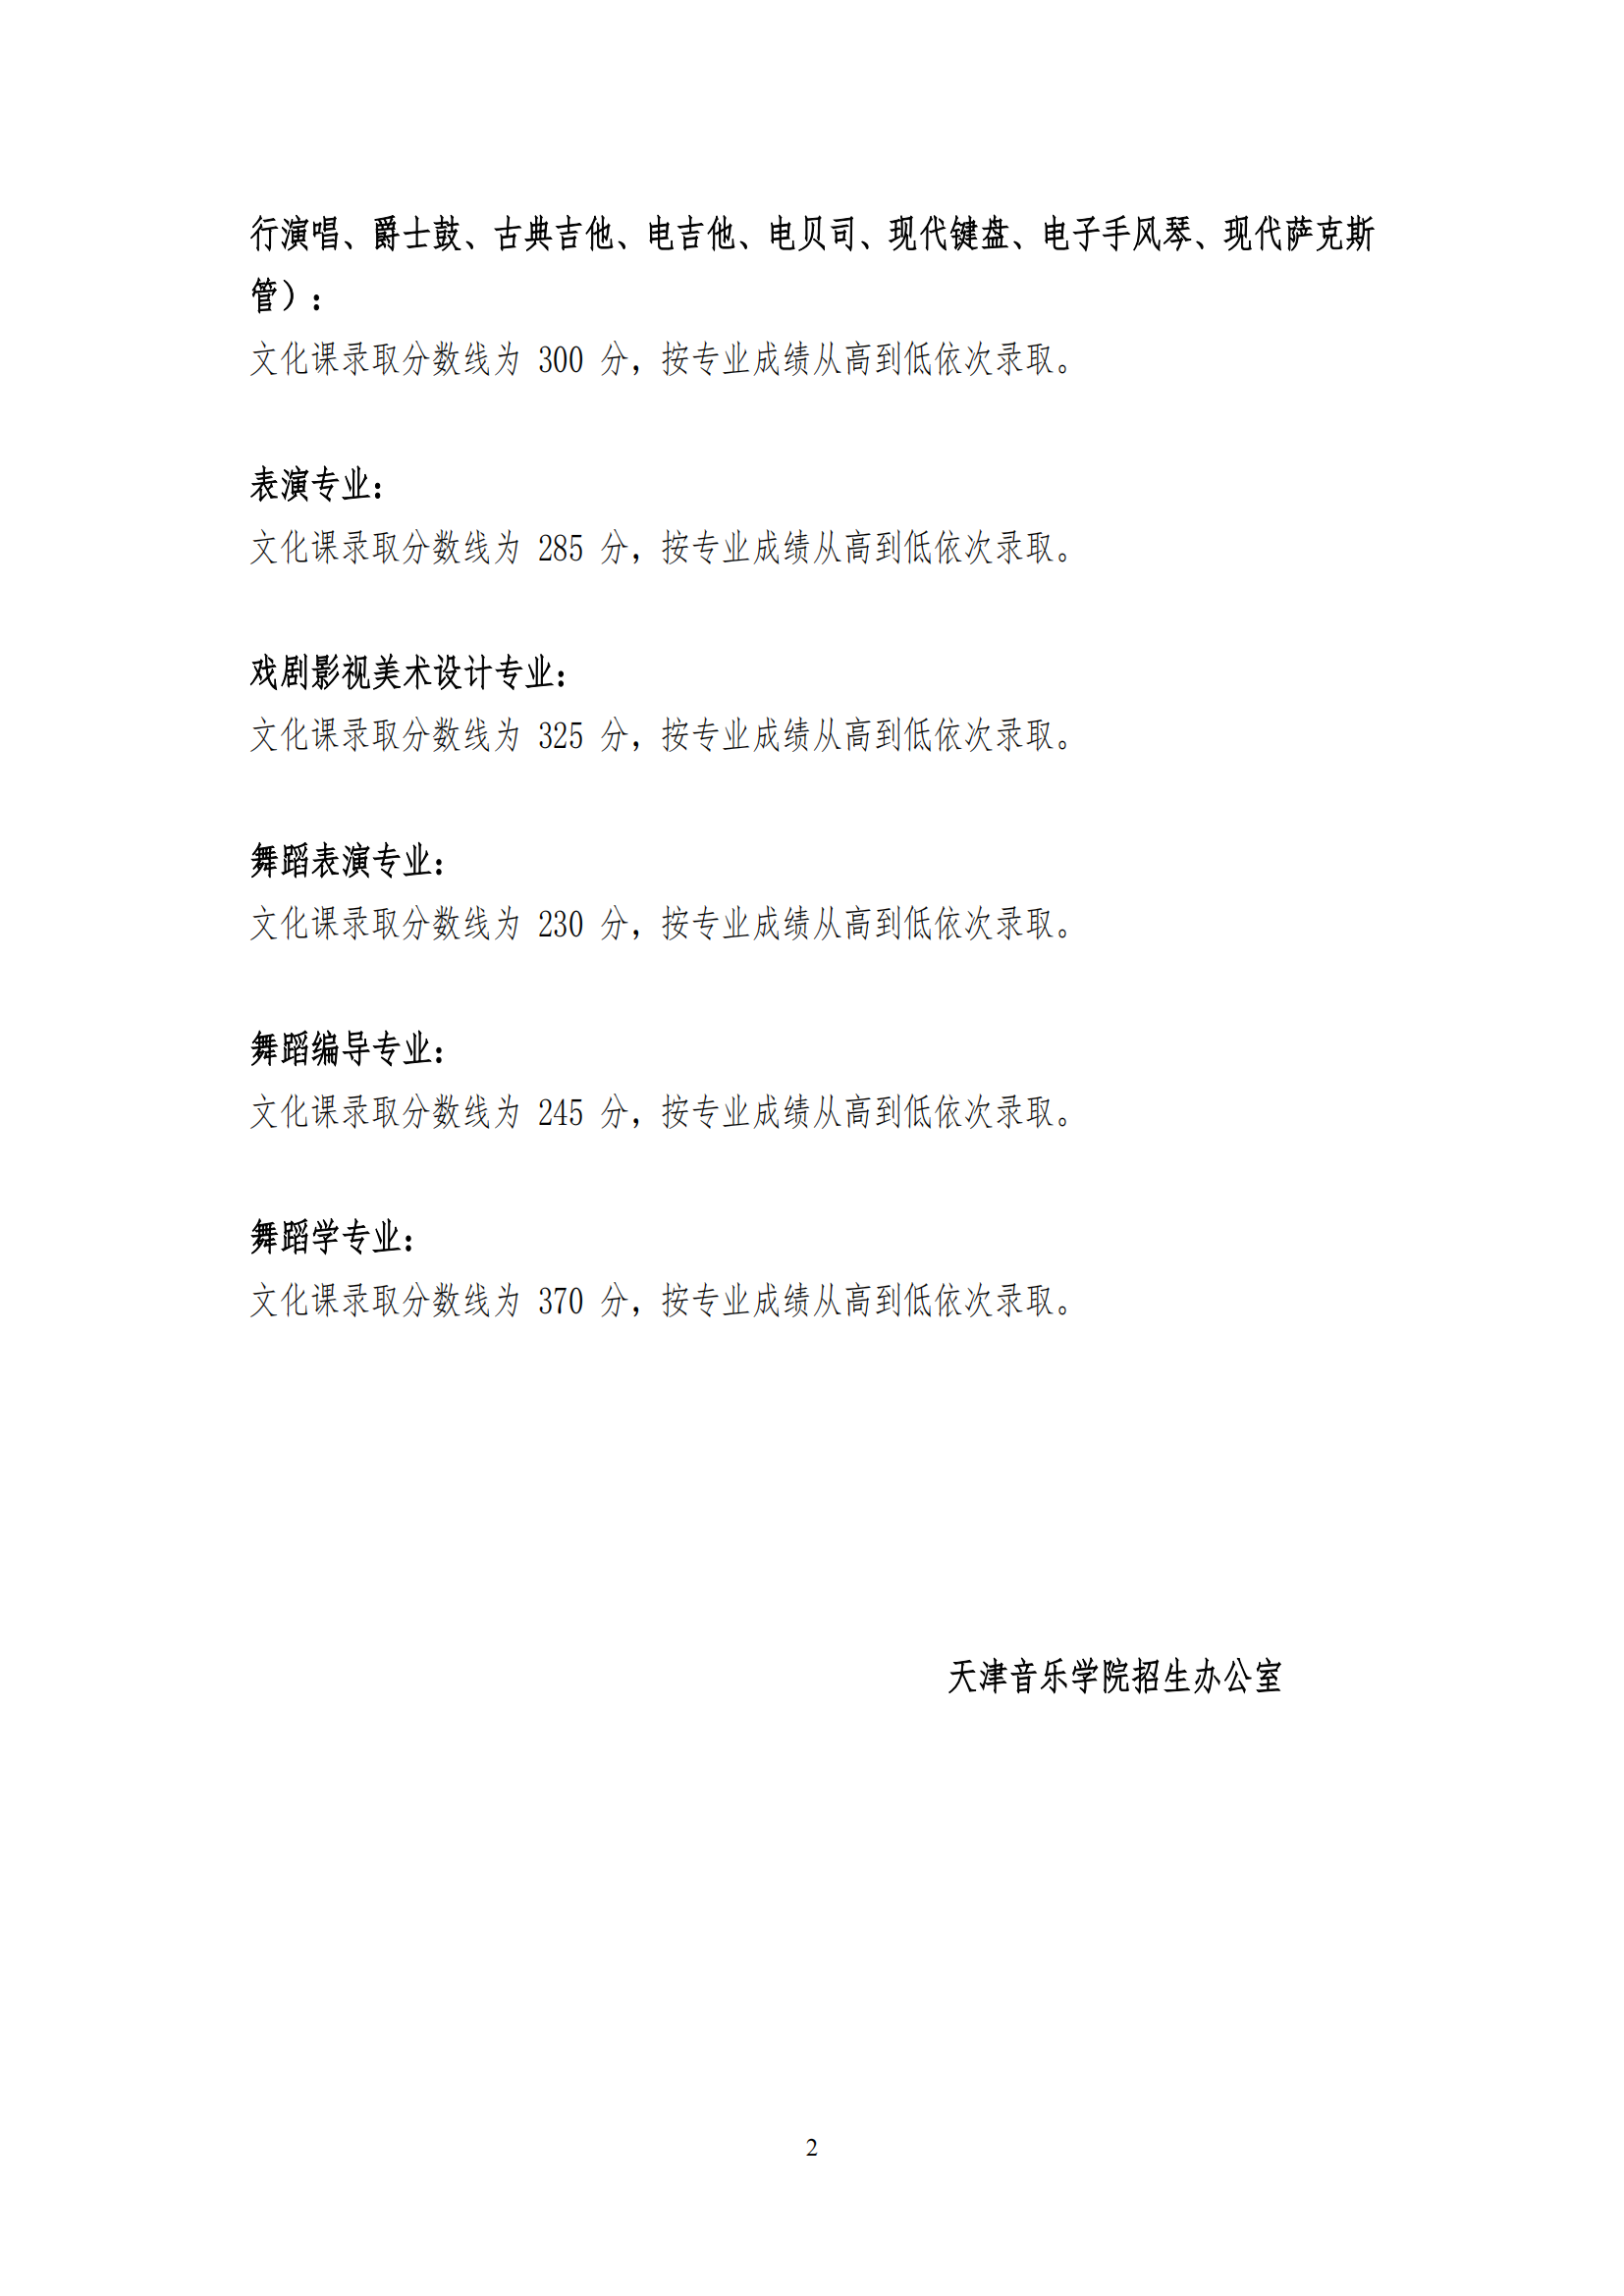 天津音乐学院 2022 年本科招生考试录取原则及文化课录取分数线_01.png